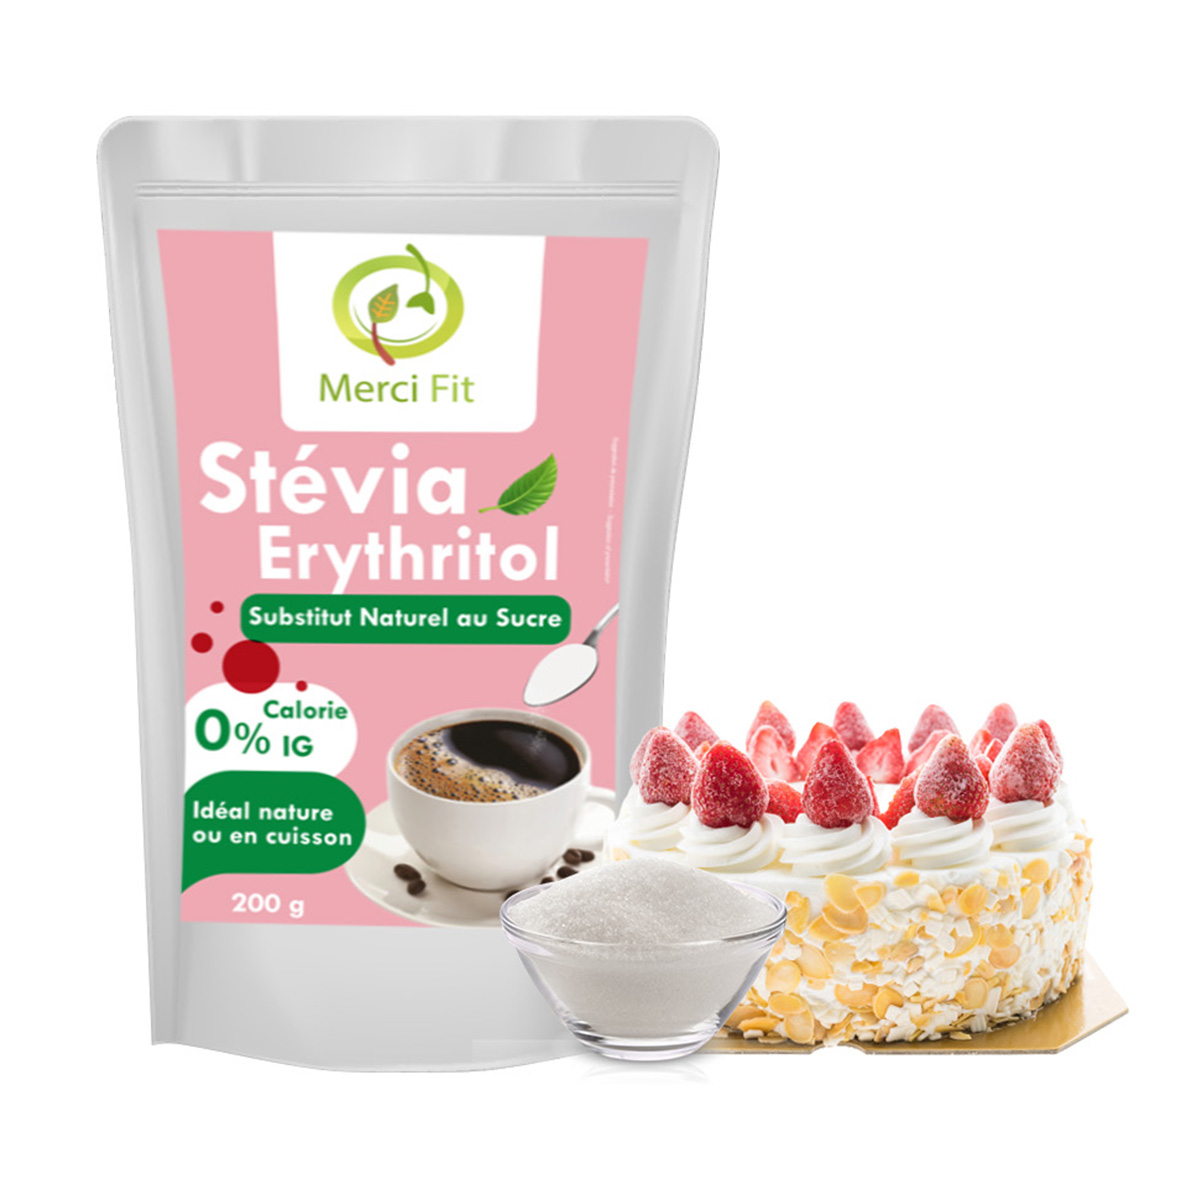 Stevia liquide remplace le sucre, pour diabétiques,..